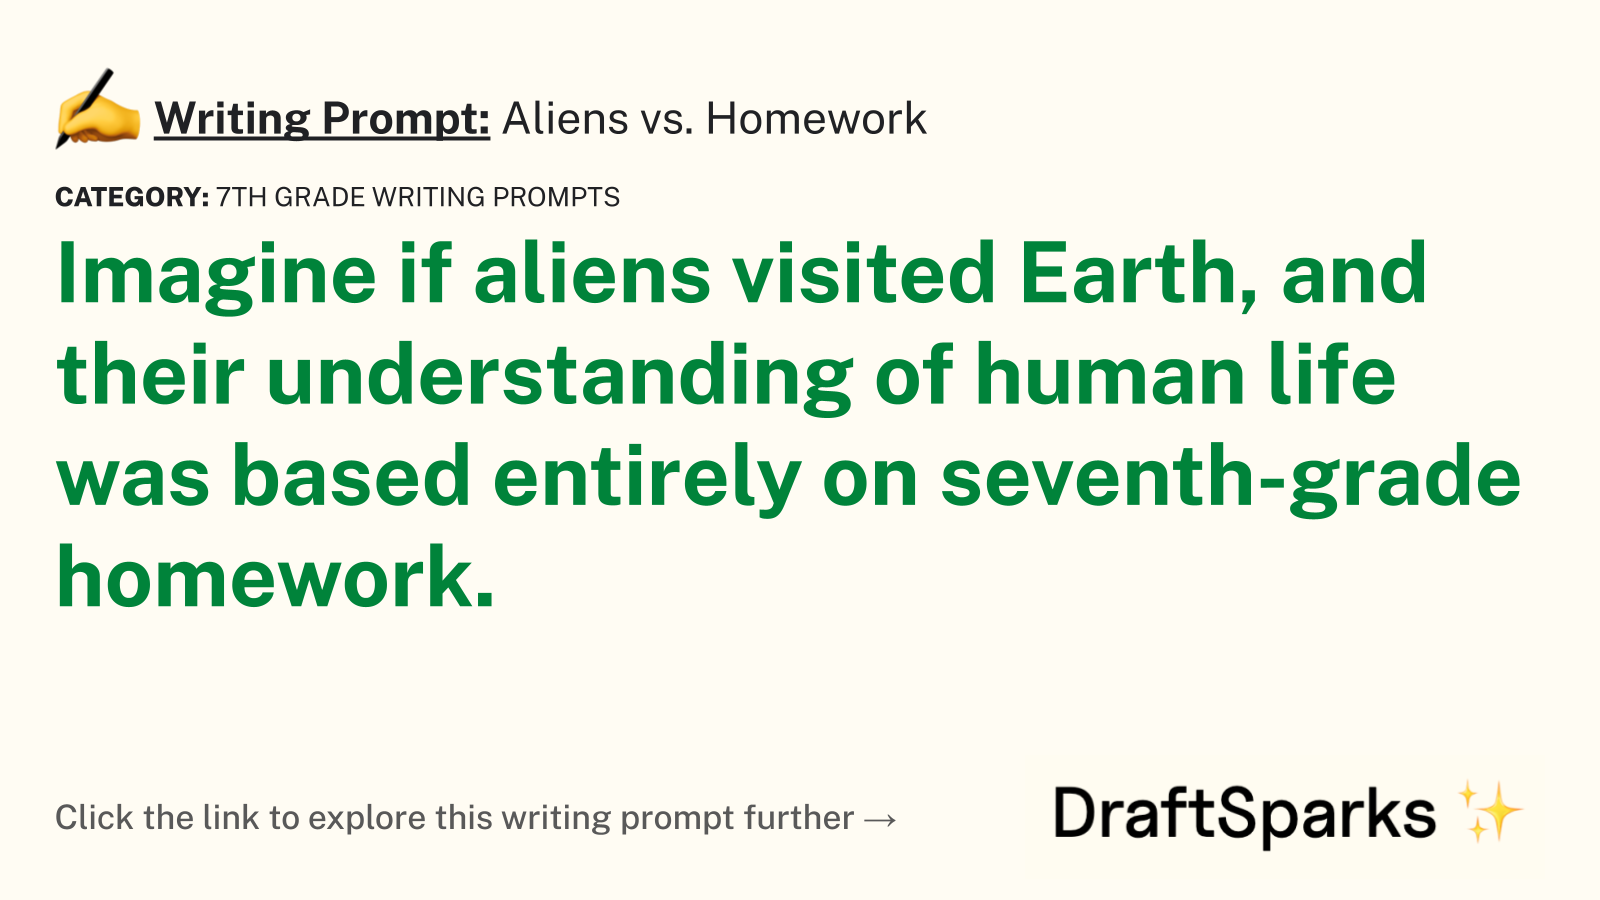 Aliens vs. Homework